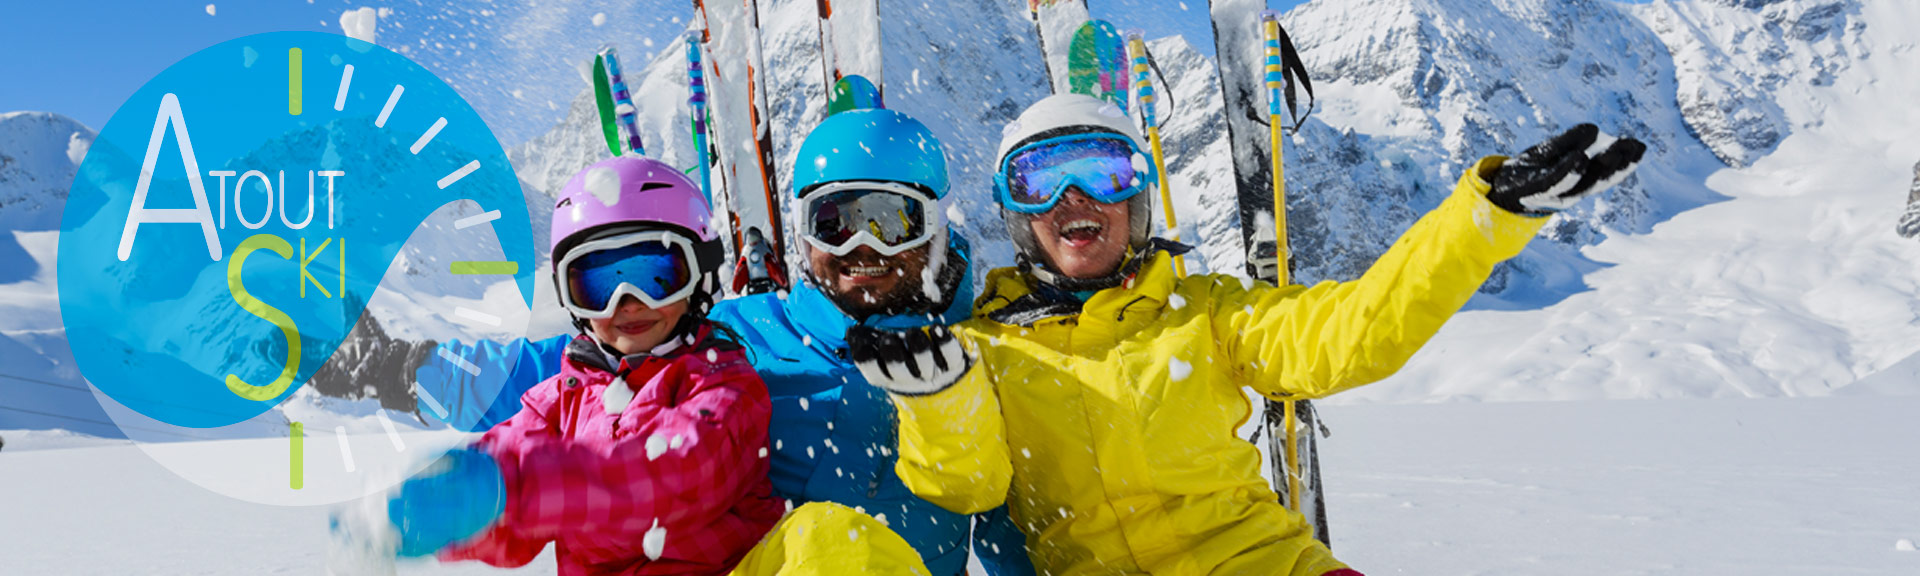 atoutsport.be ski en Famille cours de ski ambiance familiale inscription